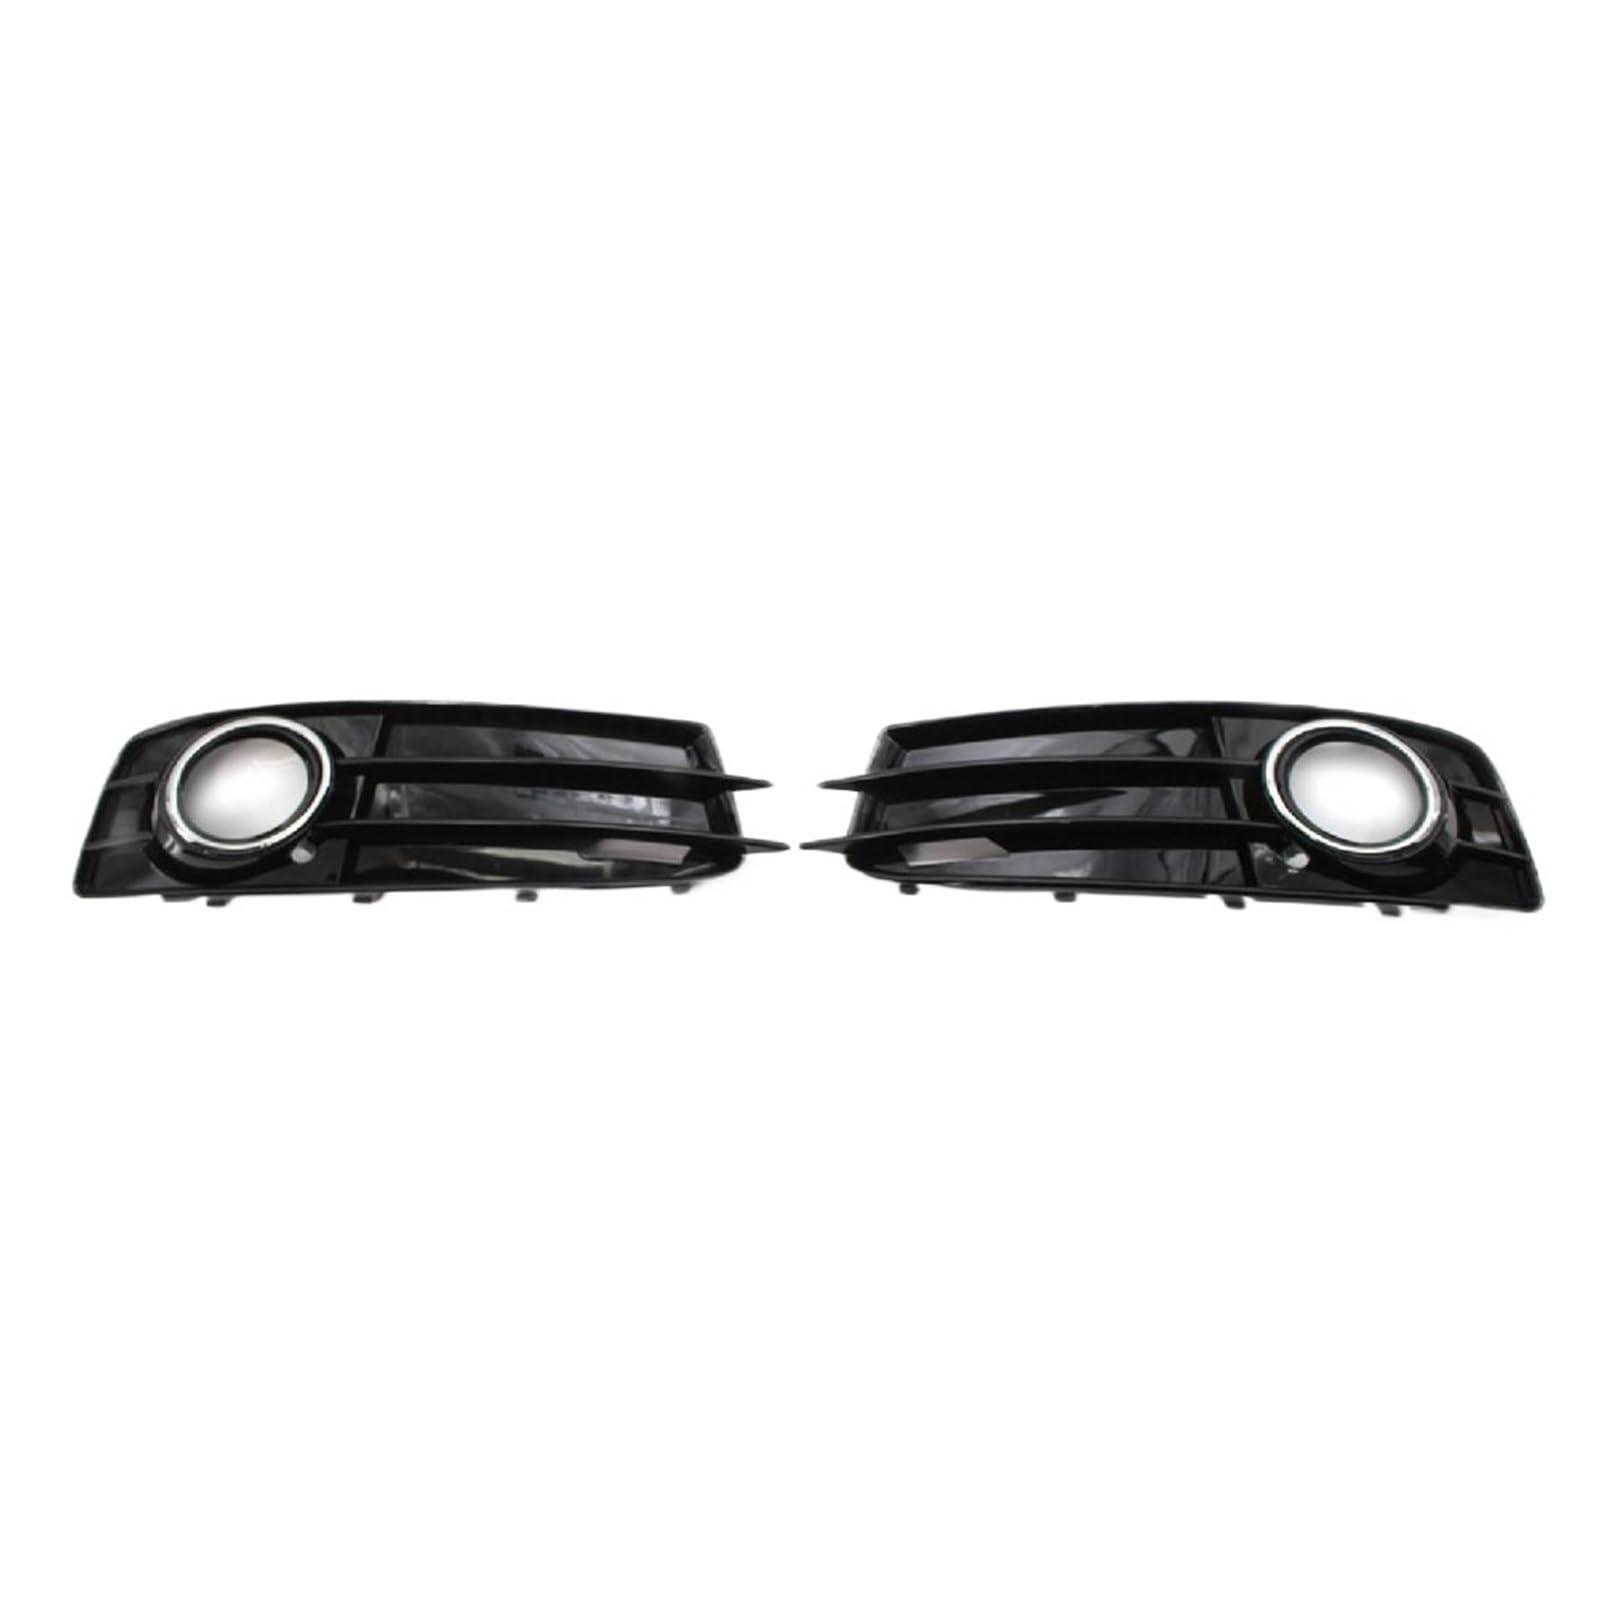 2x Auto Nebelscheinwerfer Grill Lampenabdeckung Frontgrills kompatibel for Audi A3 8P S-Line 2009-2012 8P0807682 8P0807681 Chrom Schwarz Zubehör von HINDFGD